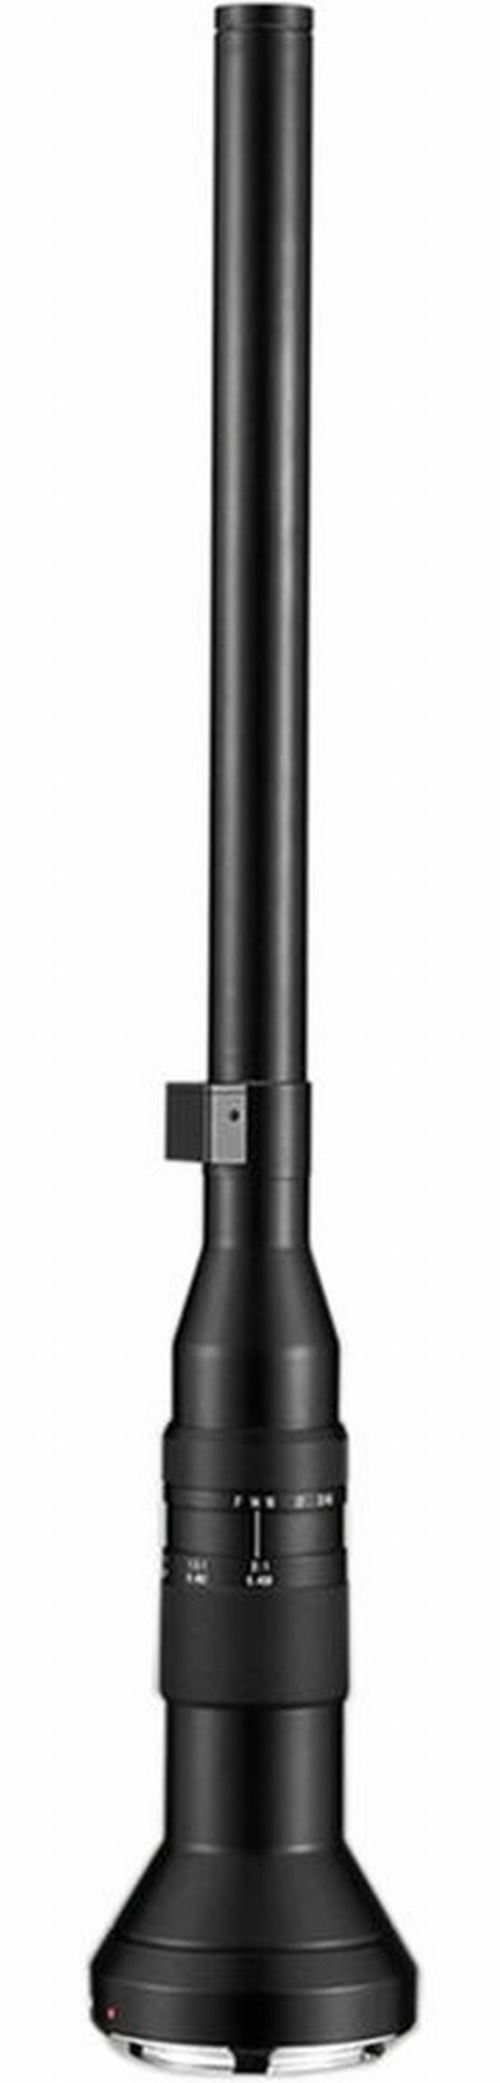 Objectif Hybride Laowa 24mm f/14 Macro Noir pour Sony FE